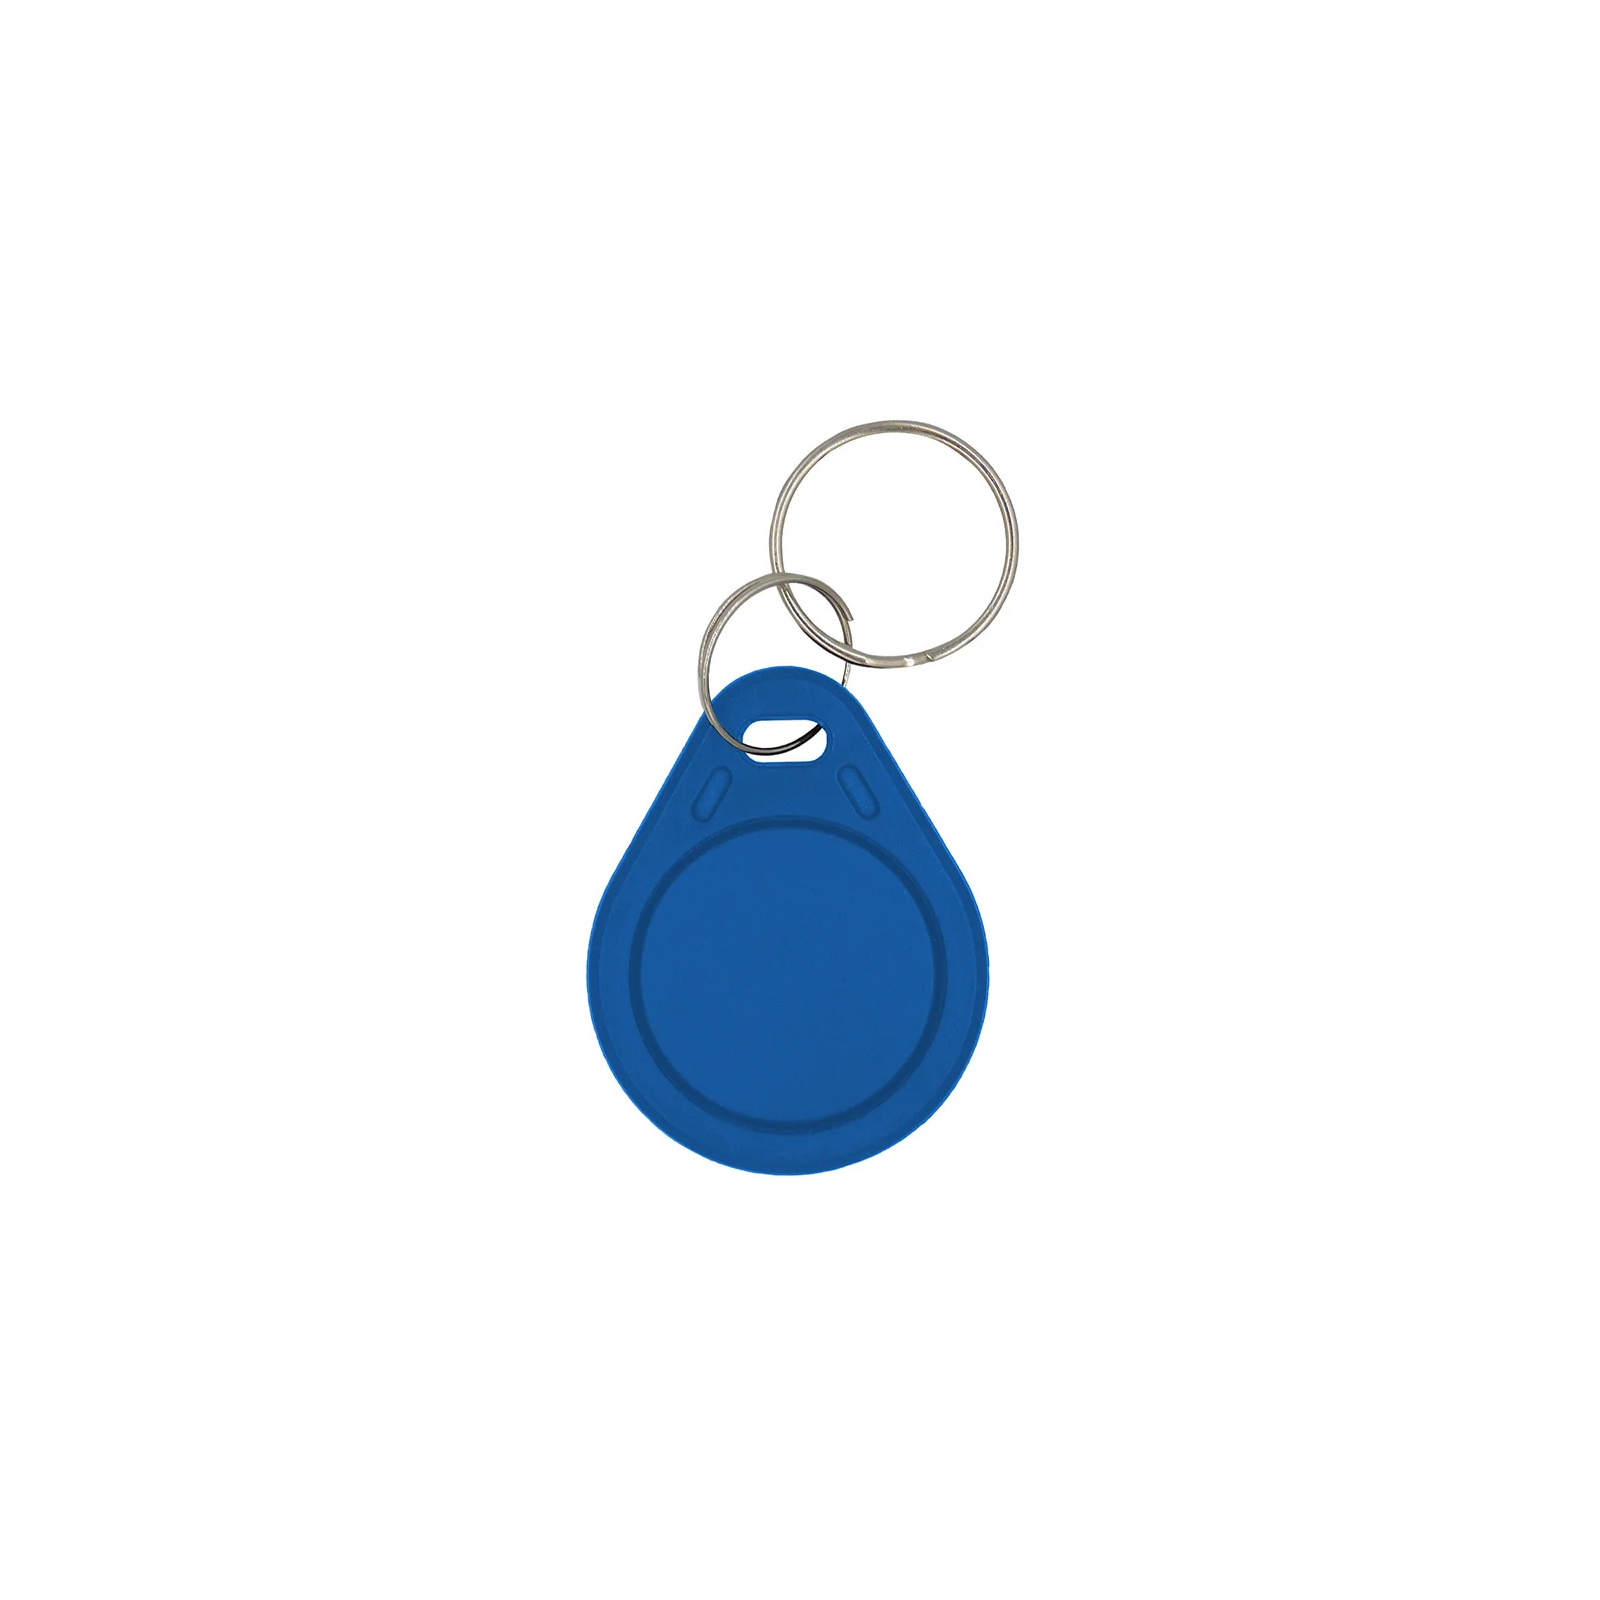 Брелок с чипом Trinix Proxymity-key Mifare 1К blue (P-key Mifare 1К blue)